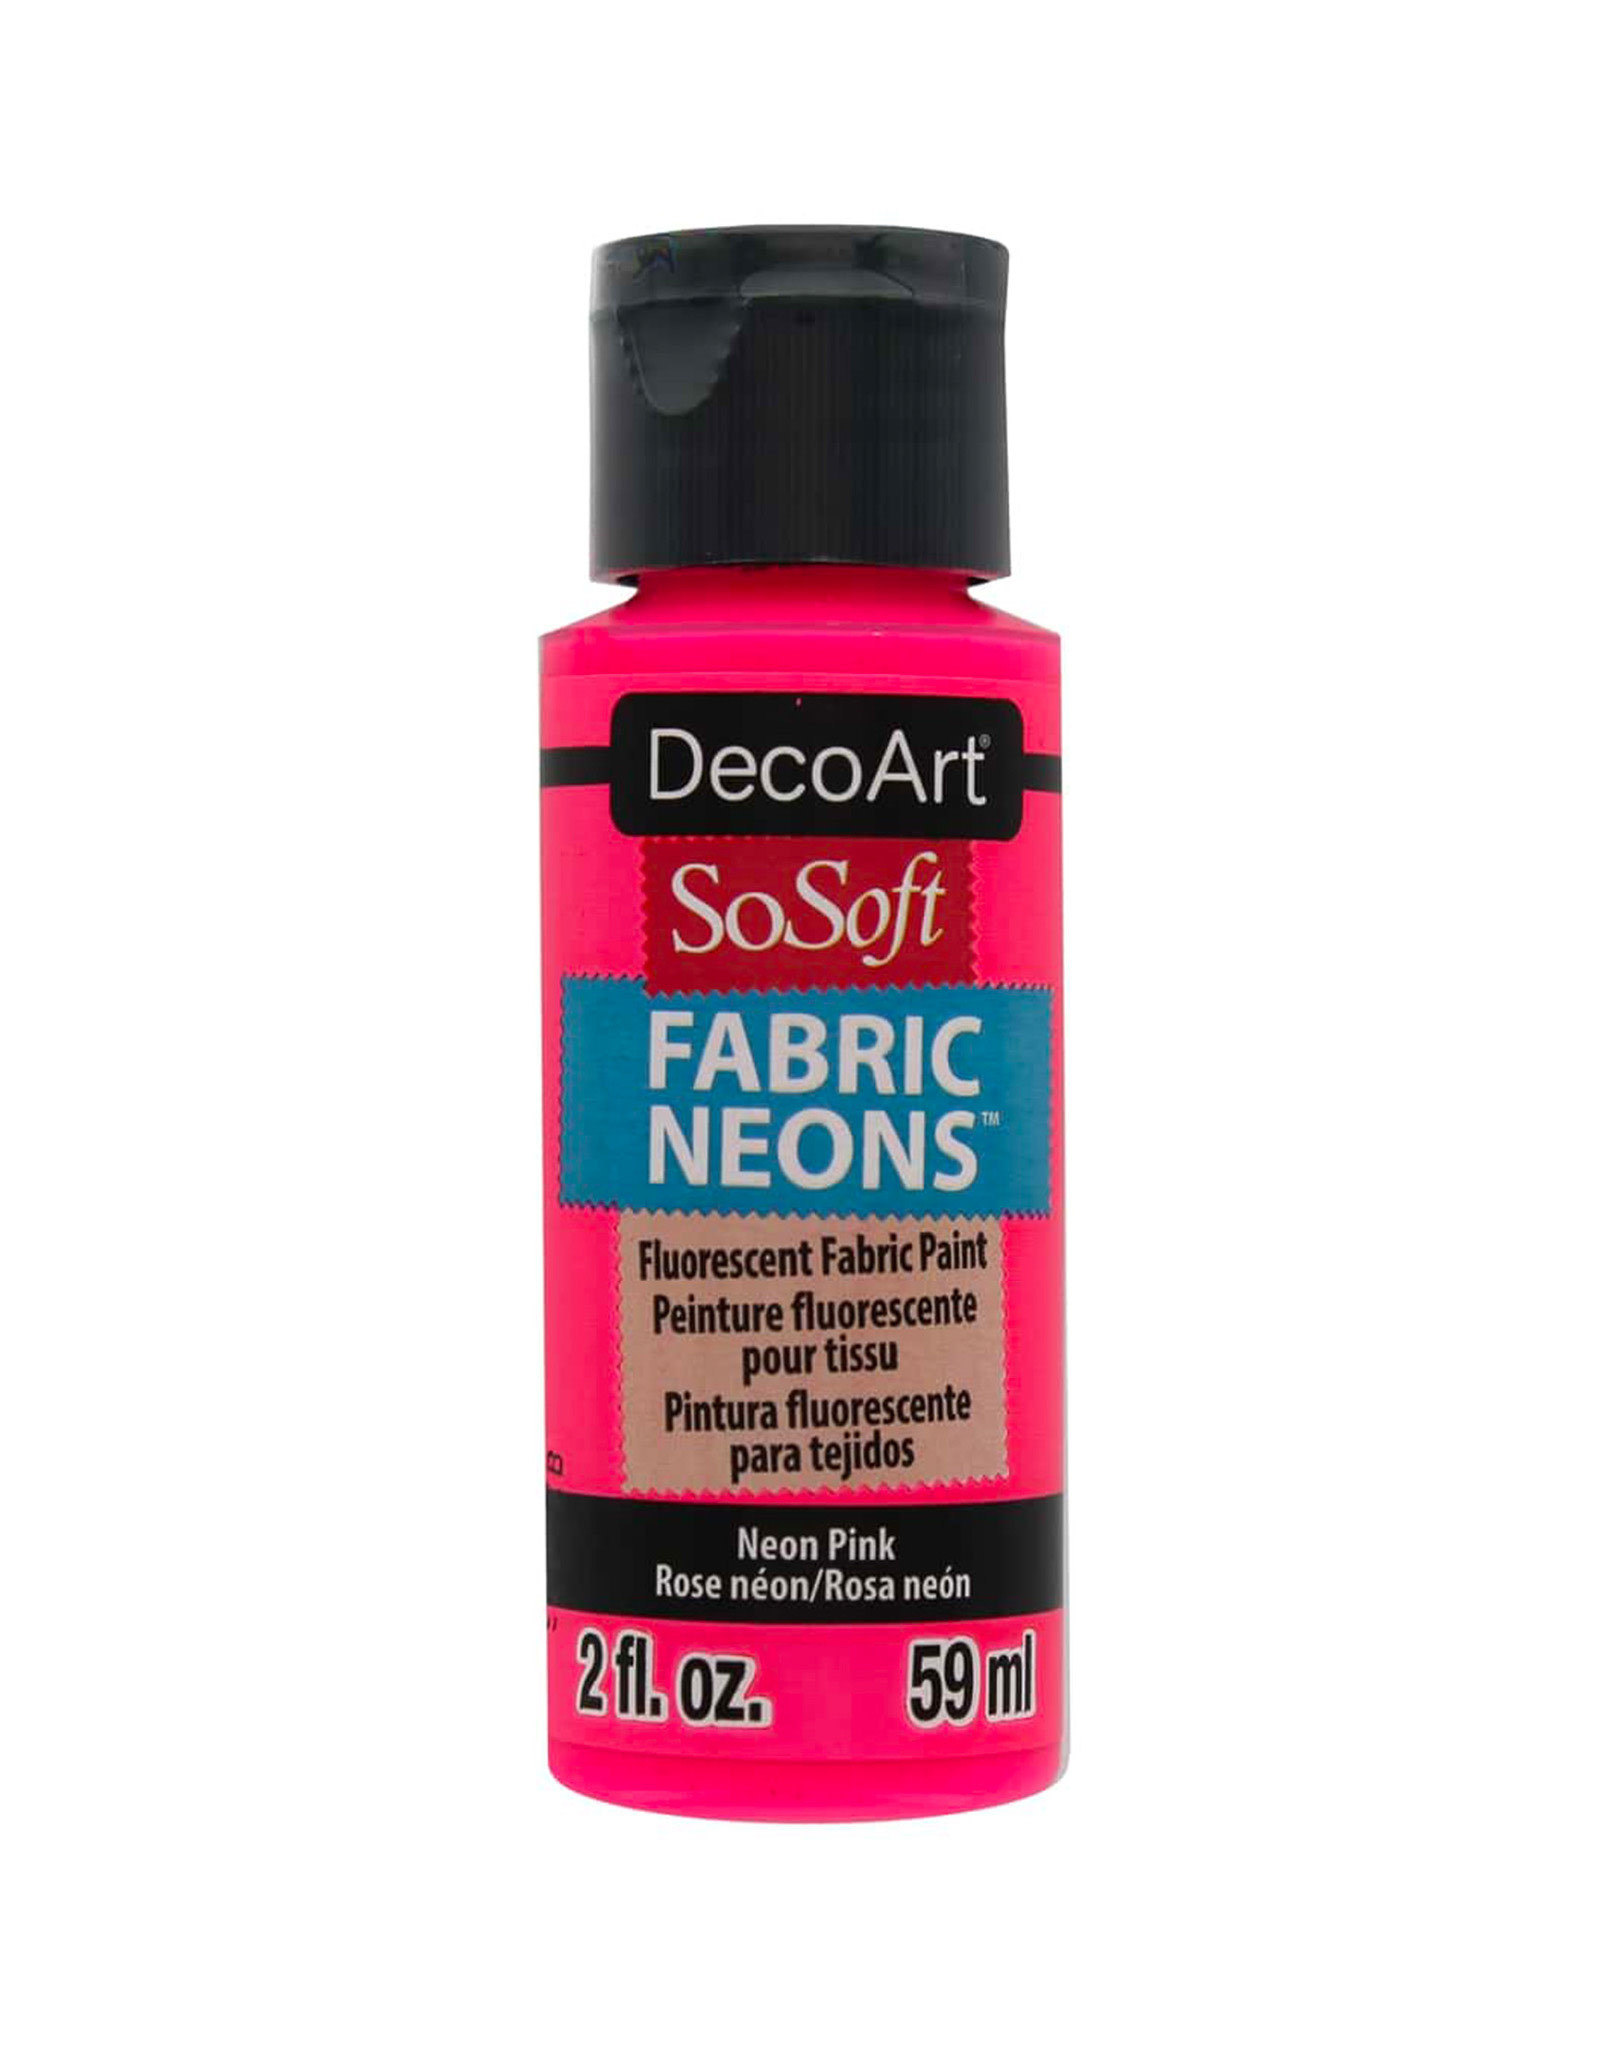 DecoArt DecoArt SoSoft Fabric Neons,  Neon Pink 2oz